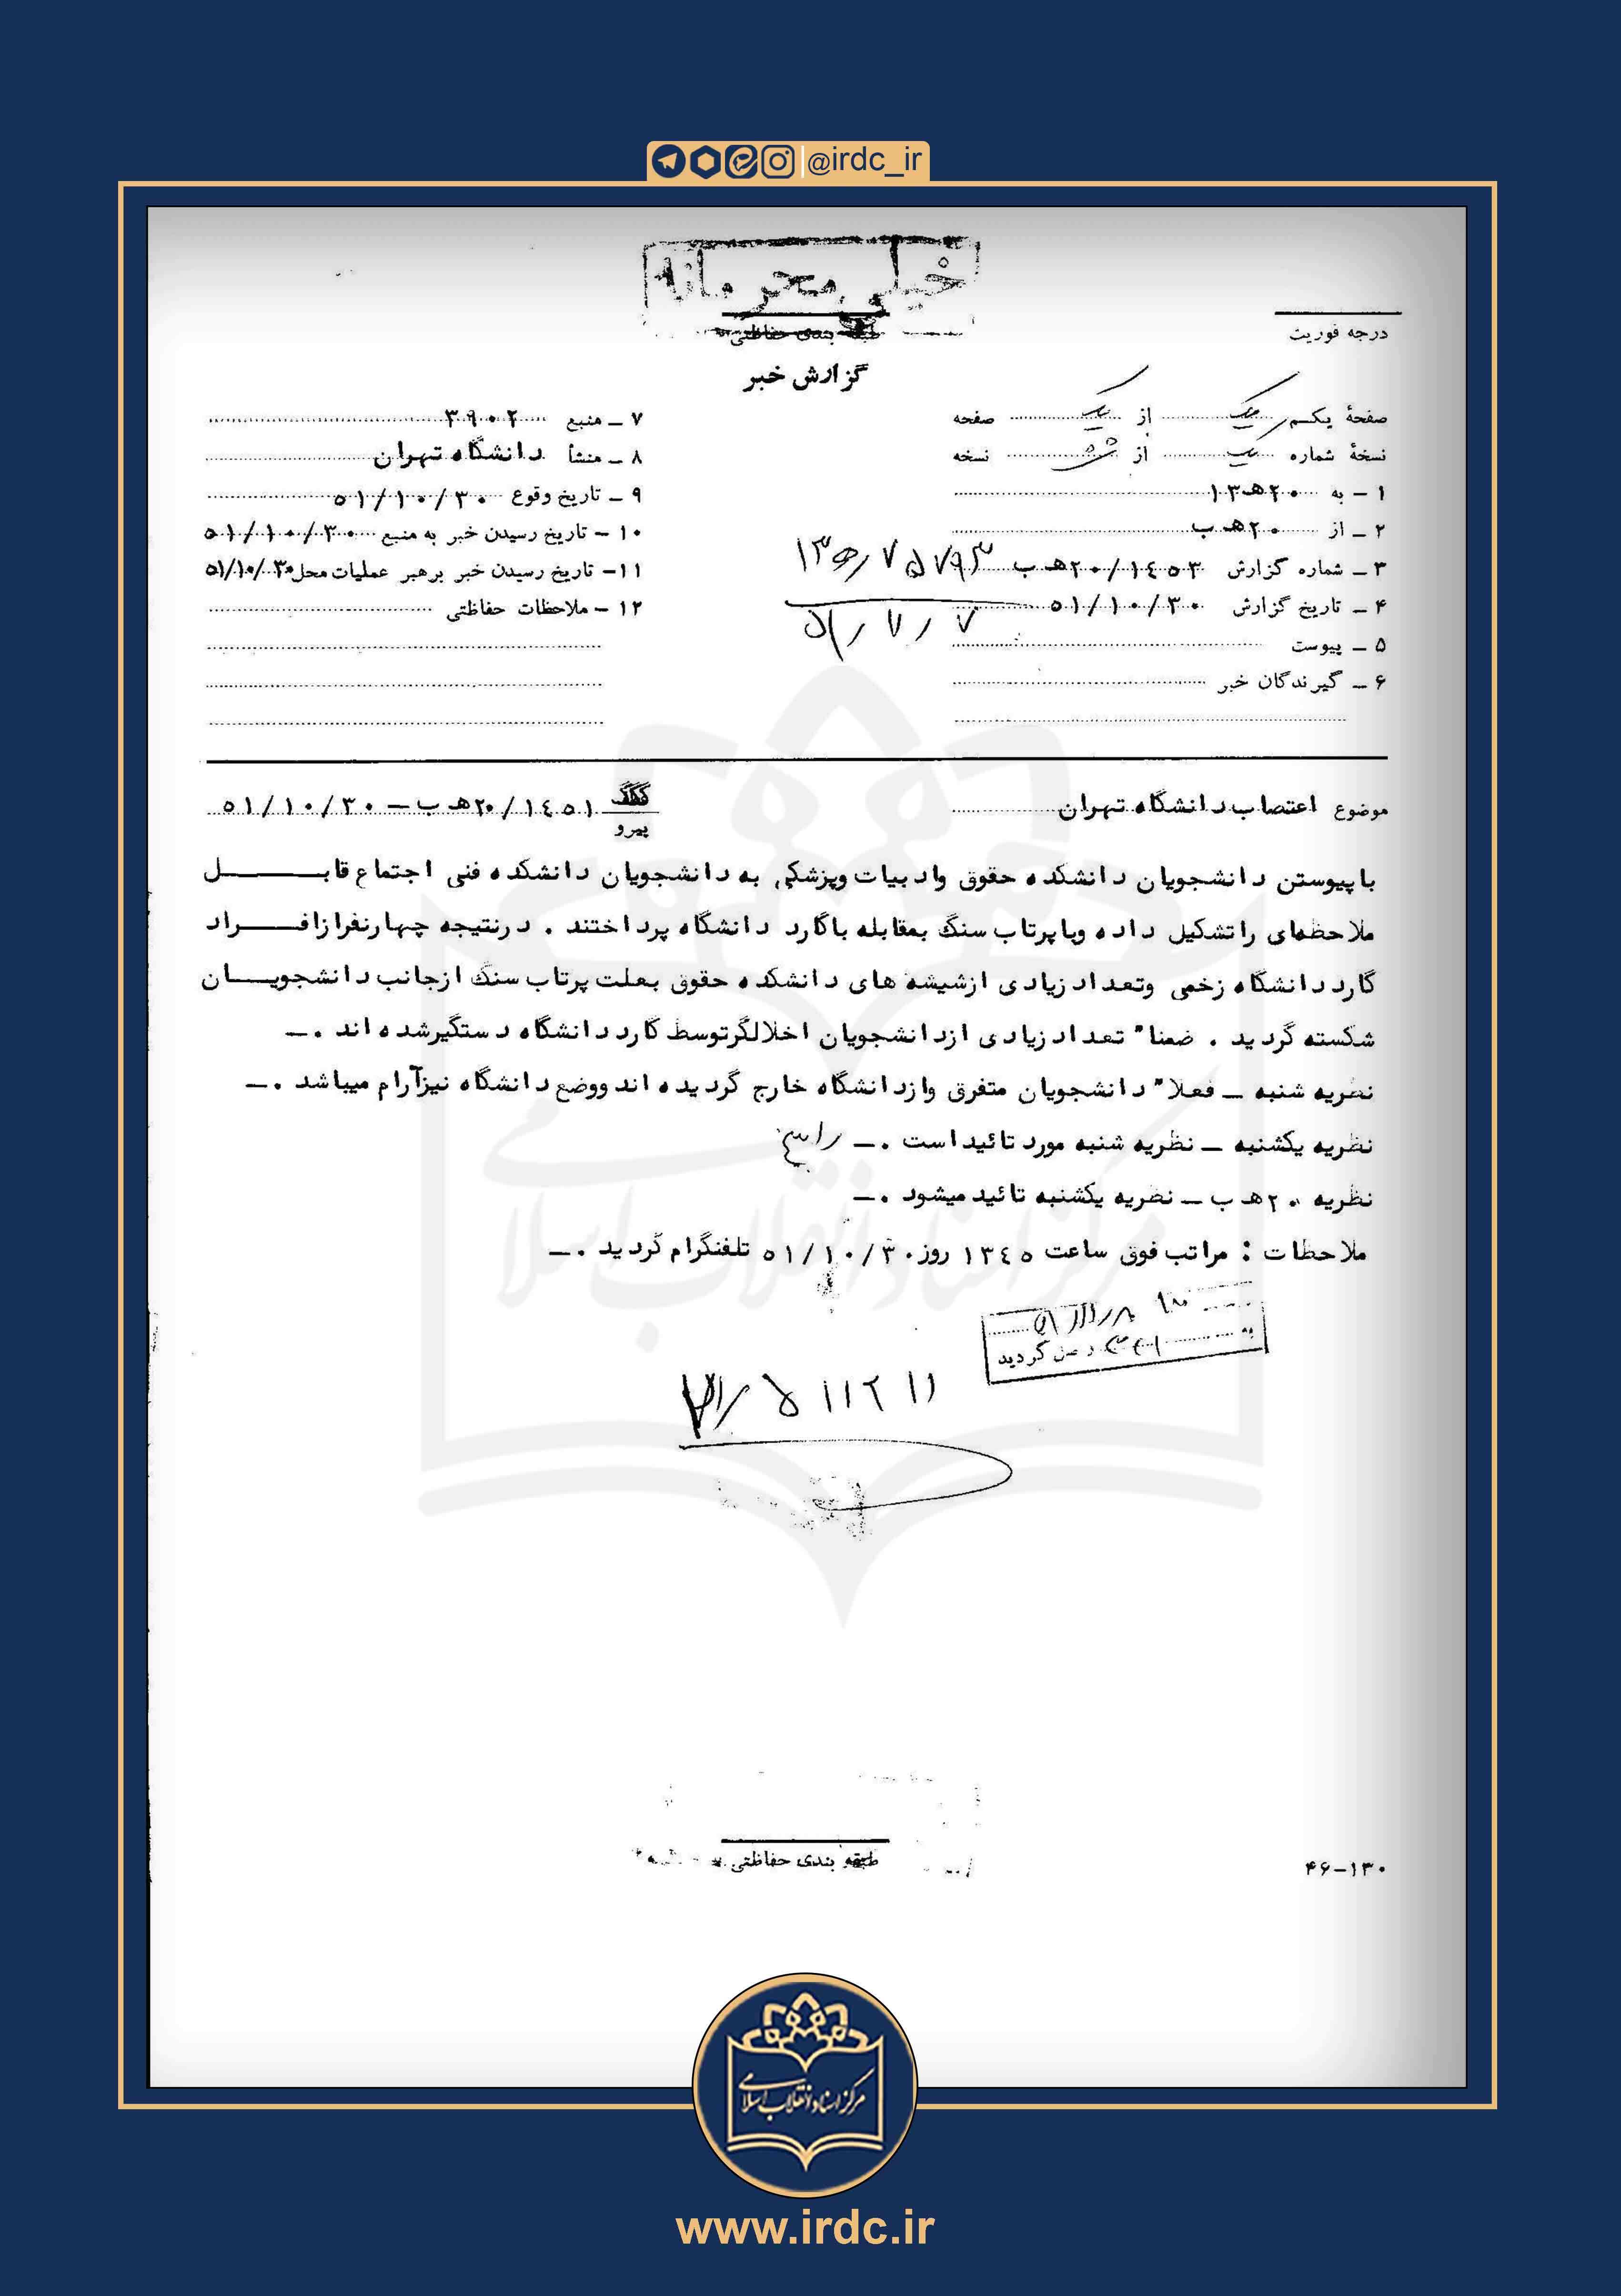 گزارش ساواک درباره اعتصابات دانشگاه تهران